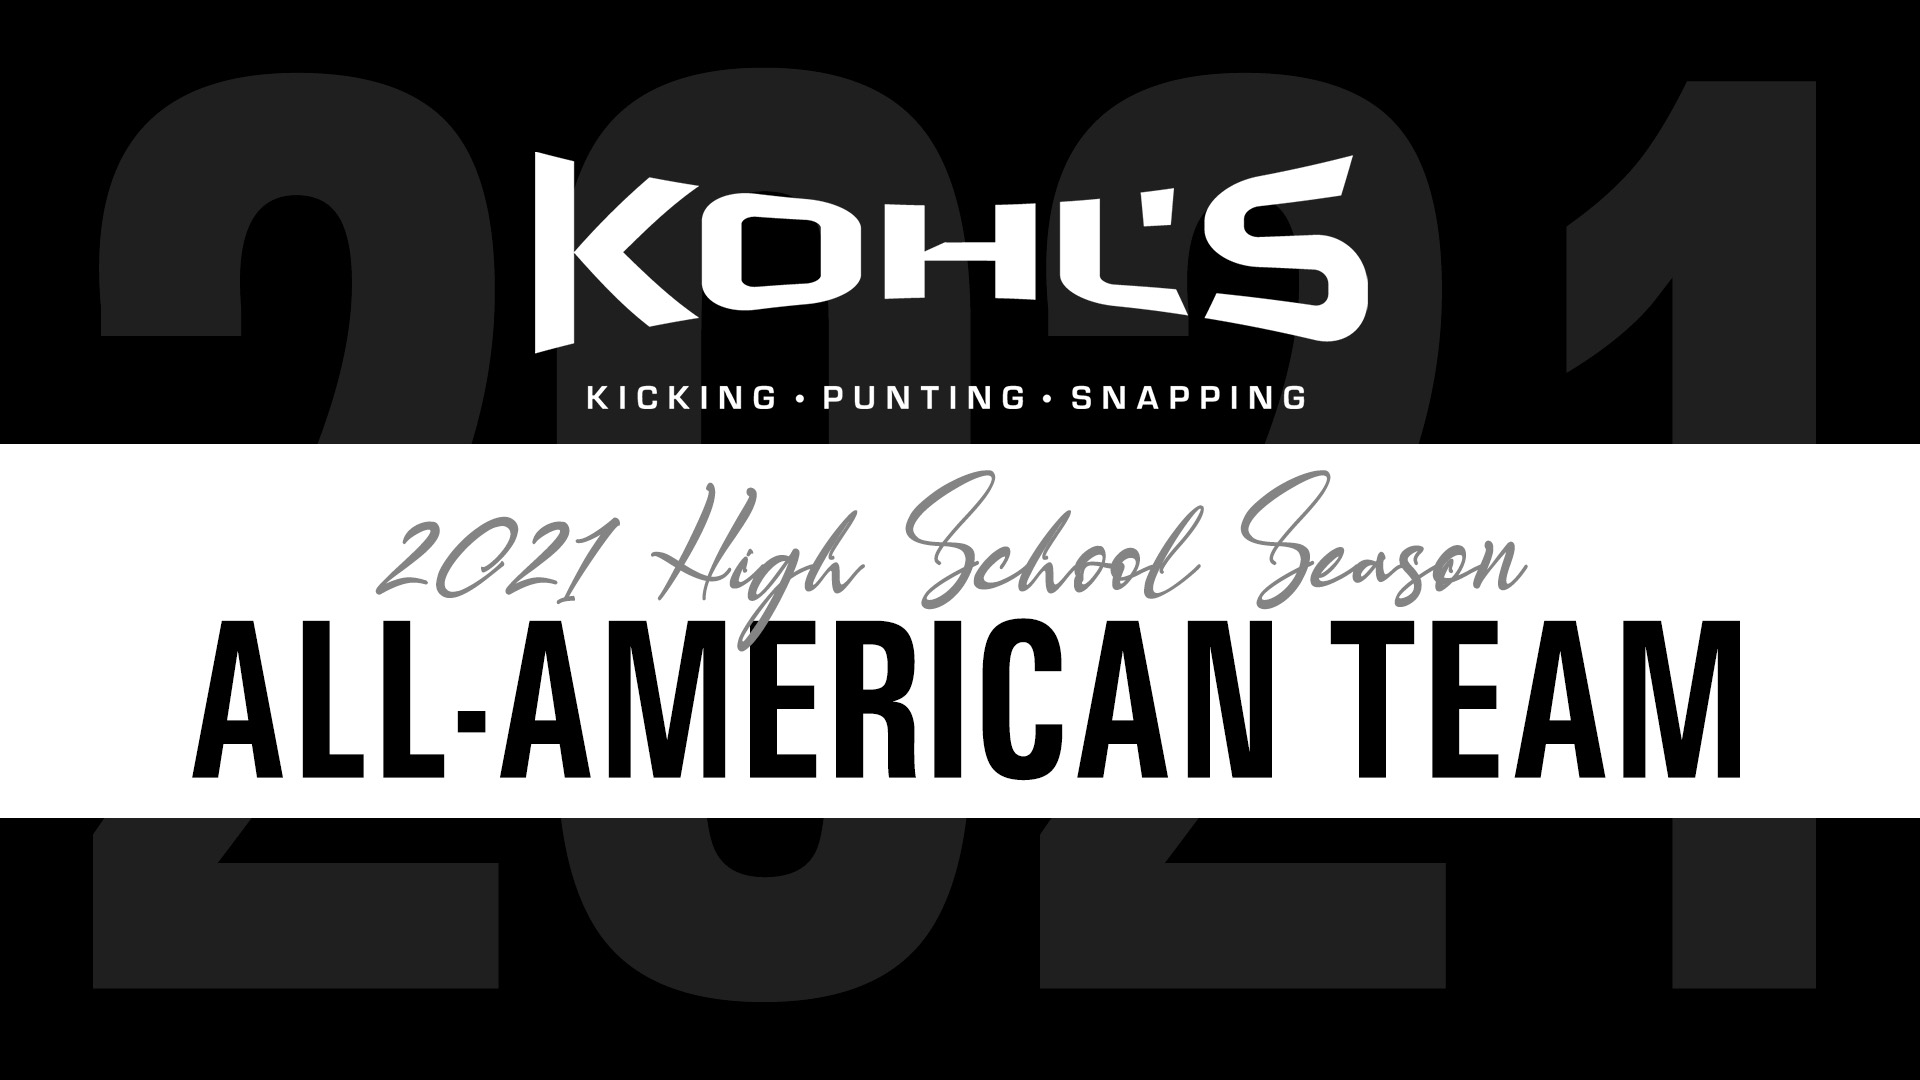 kohl's kicking rankings